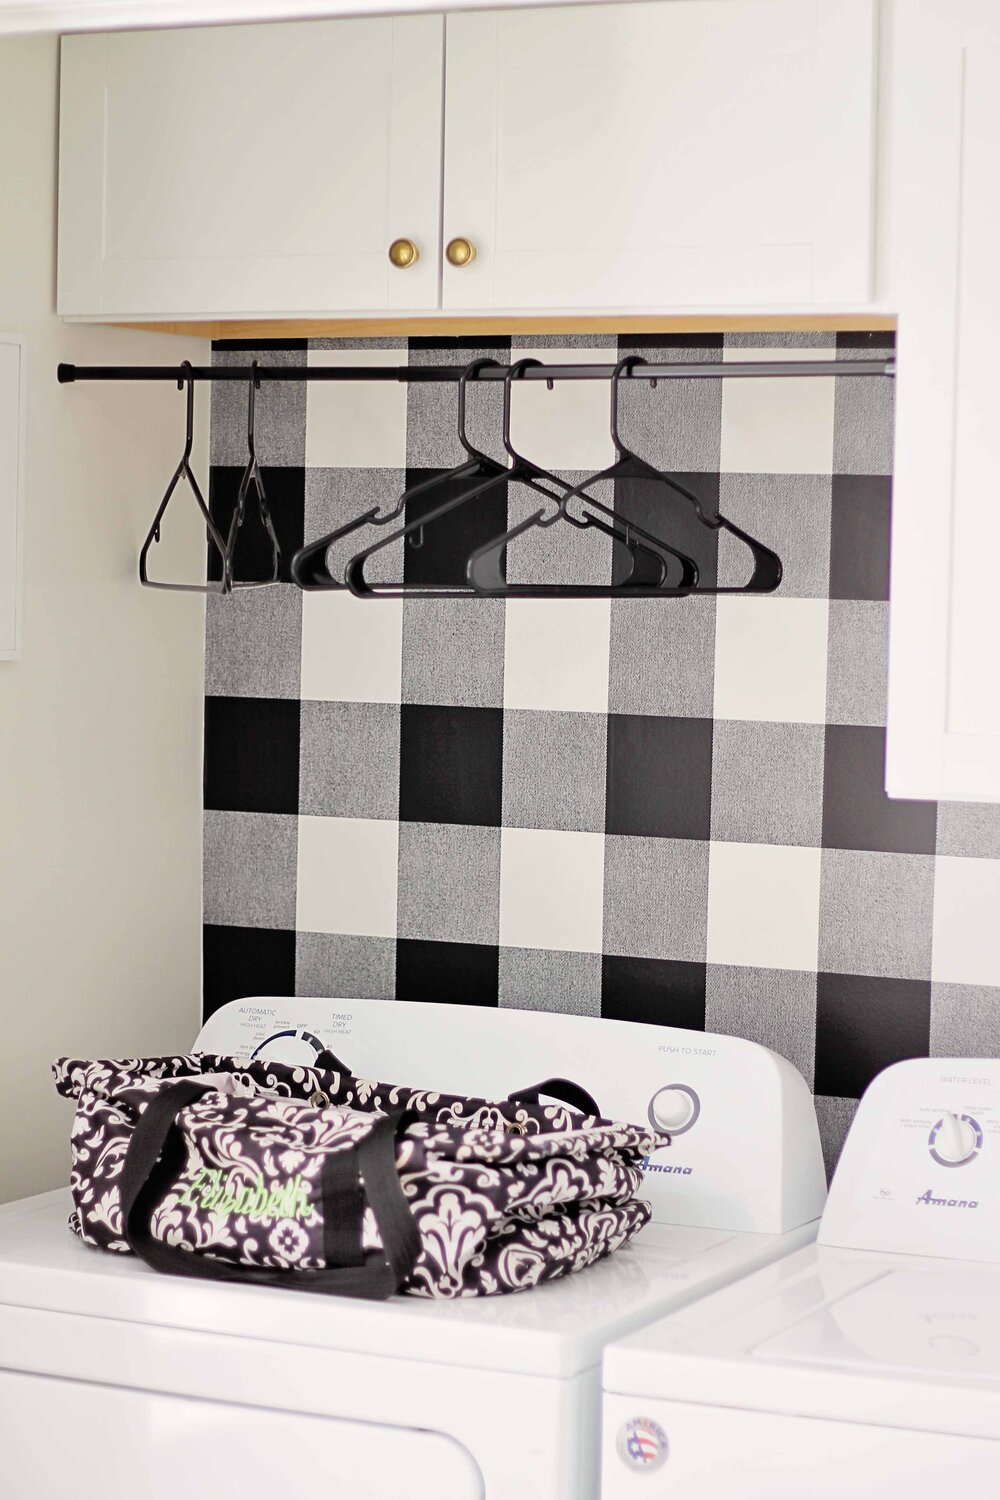 DIY Budget Small Laundry Closet Makeover for $130 — Elizabeth Burns Design,  Raleigh NC Interior Designer